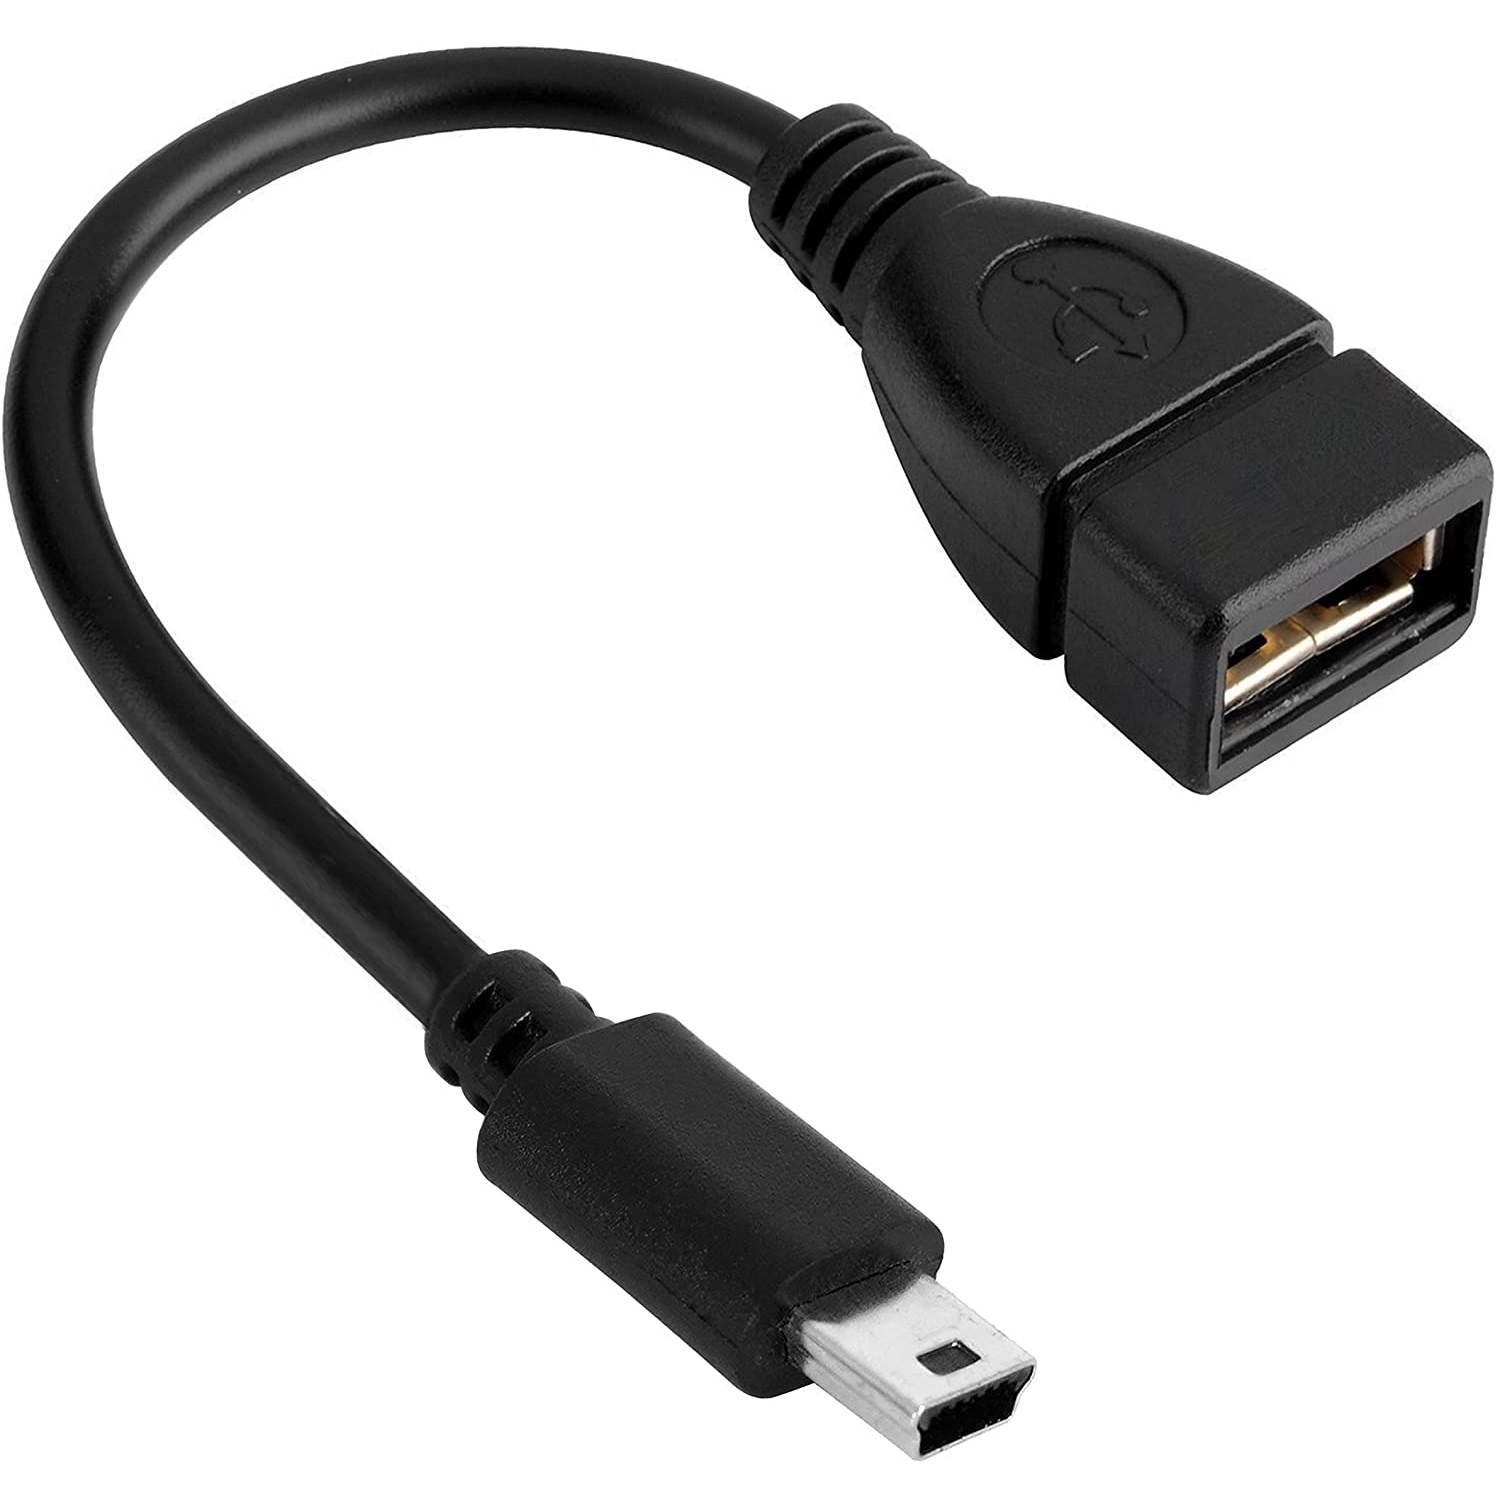  کابل تبدیل USB به mini USB مدل ۵ پین (ذوزنقه) به طول ۳۰ سانتی متر